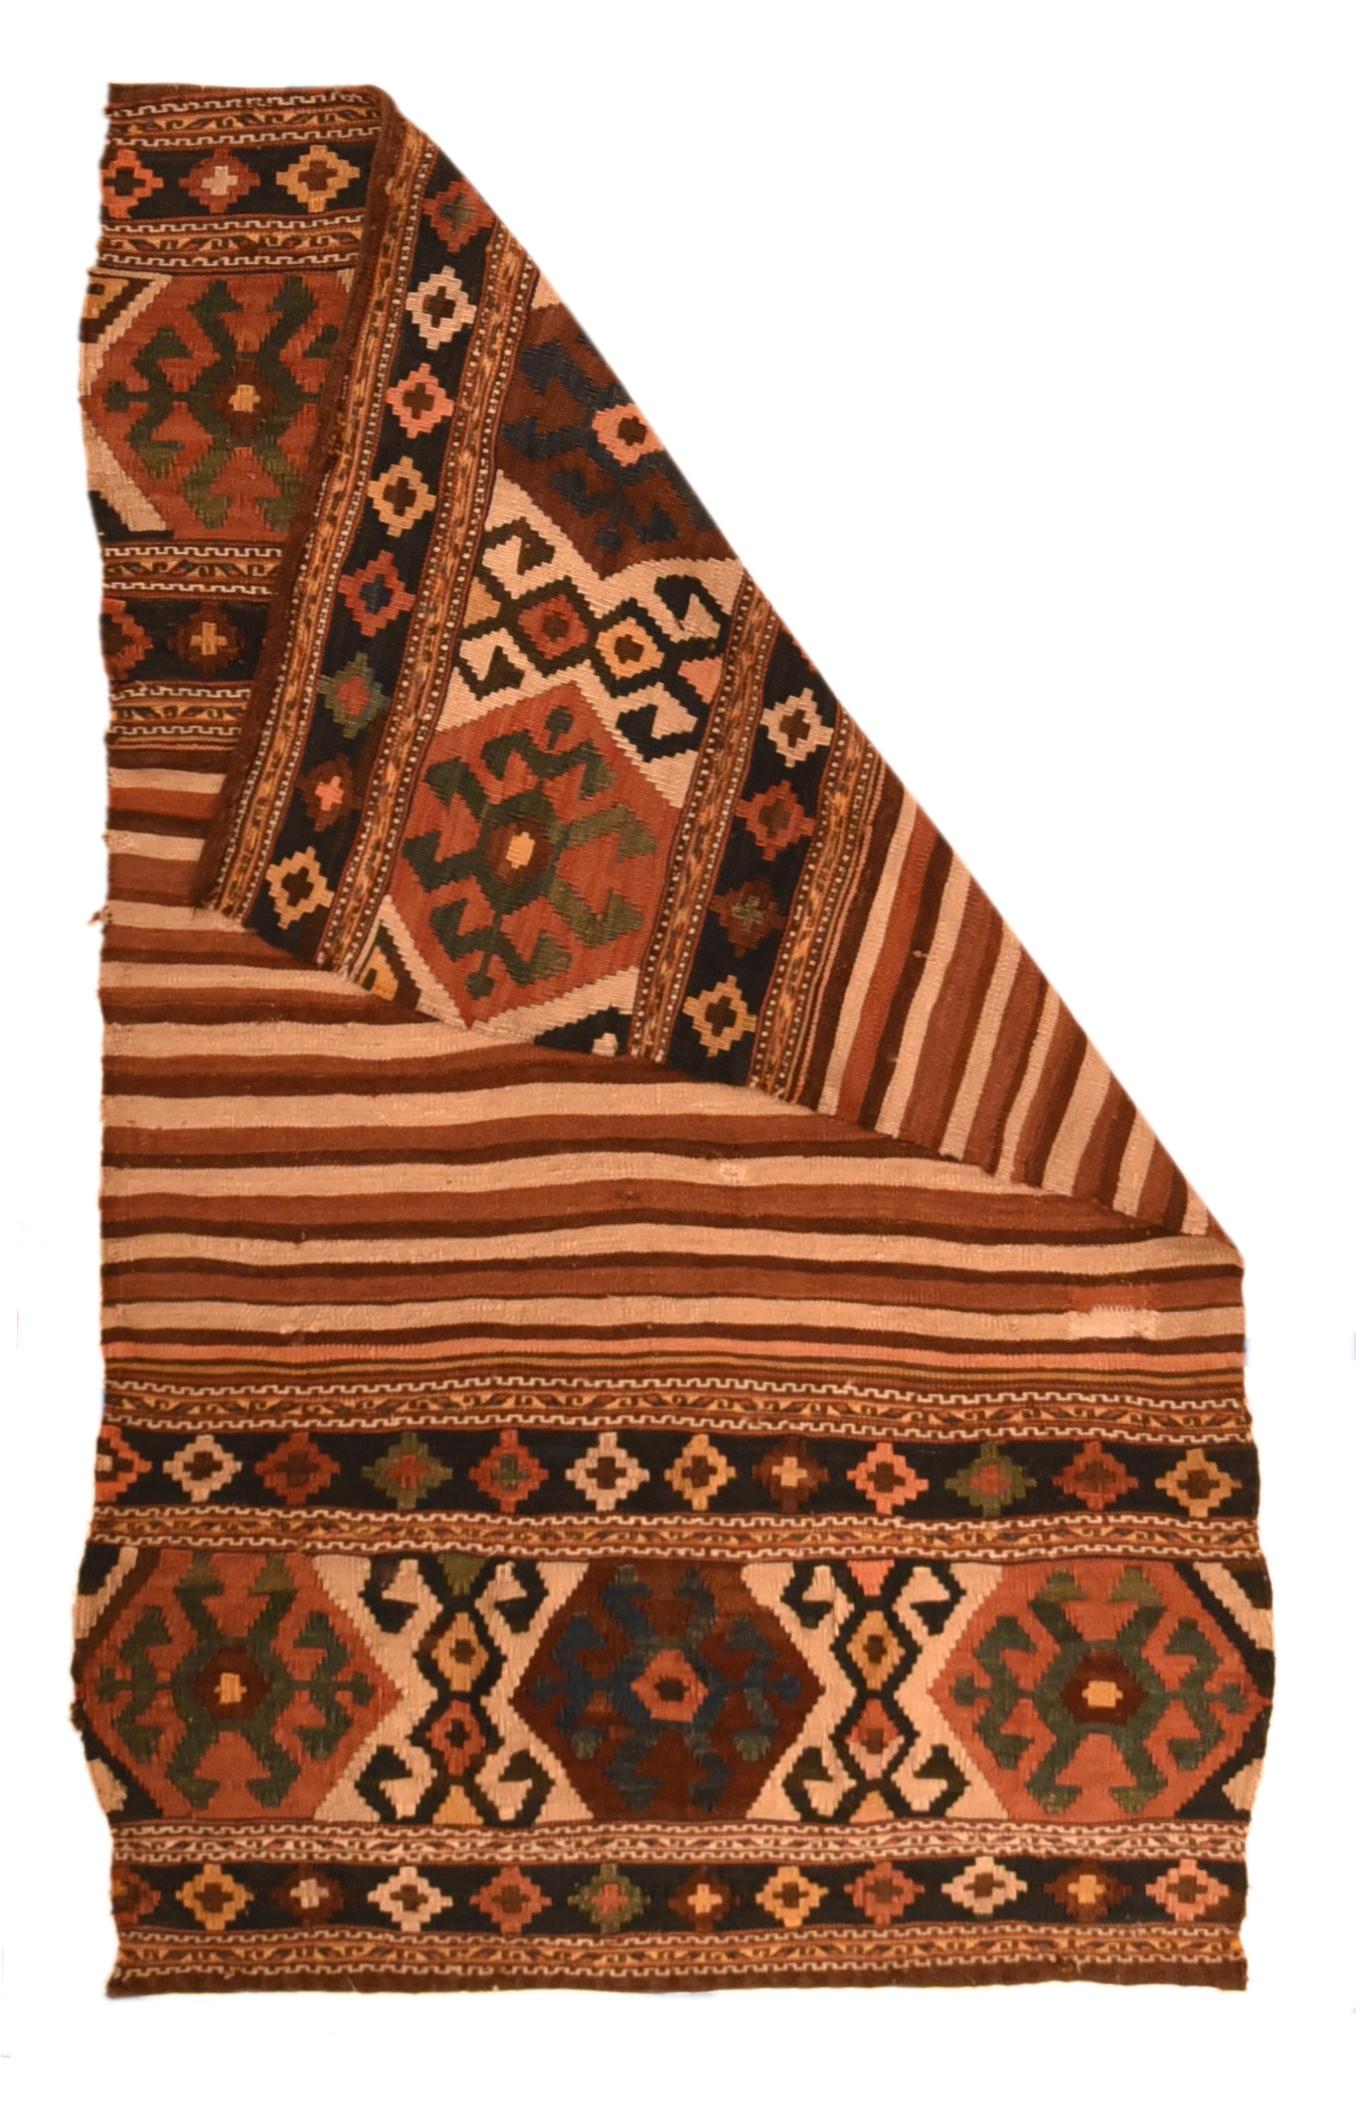 Antique Kilim rug measure 3'2